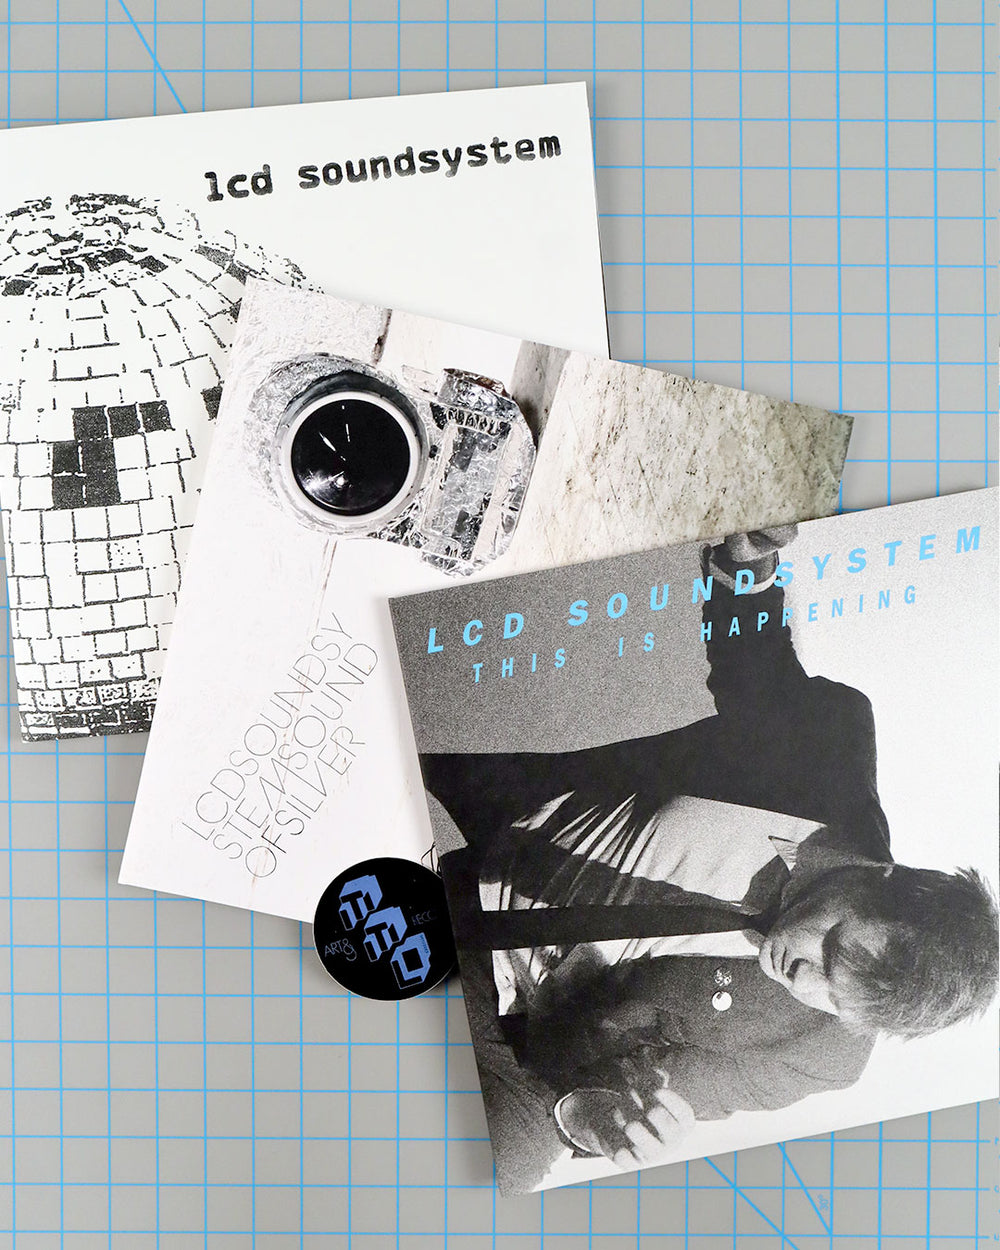 LCD Soundsystem: LCD Soundsystem Vinyl LP